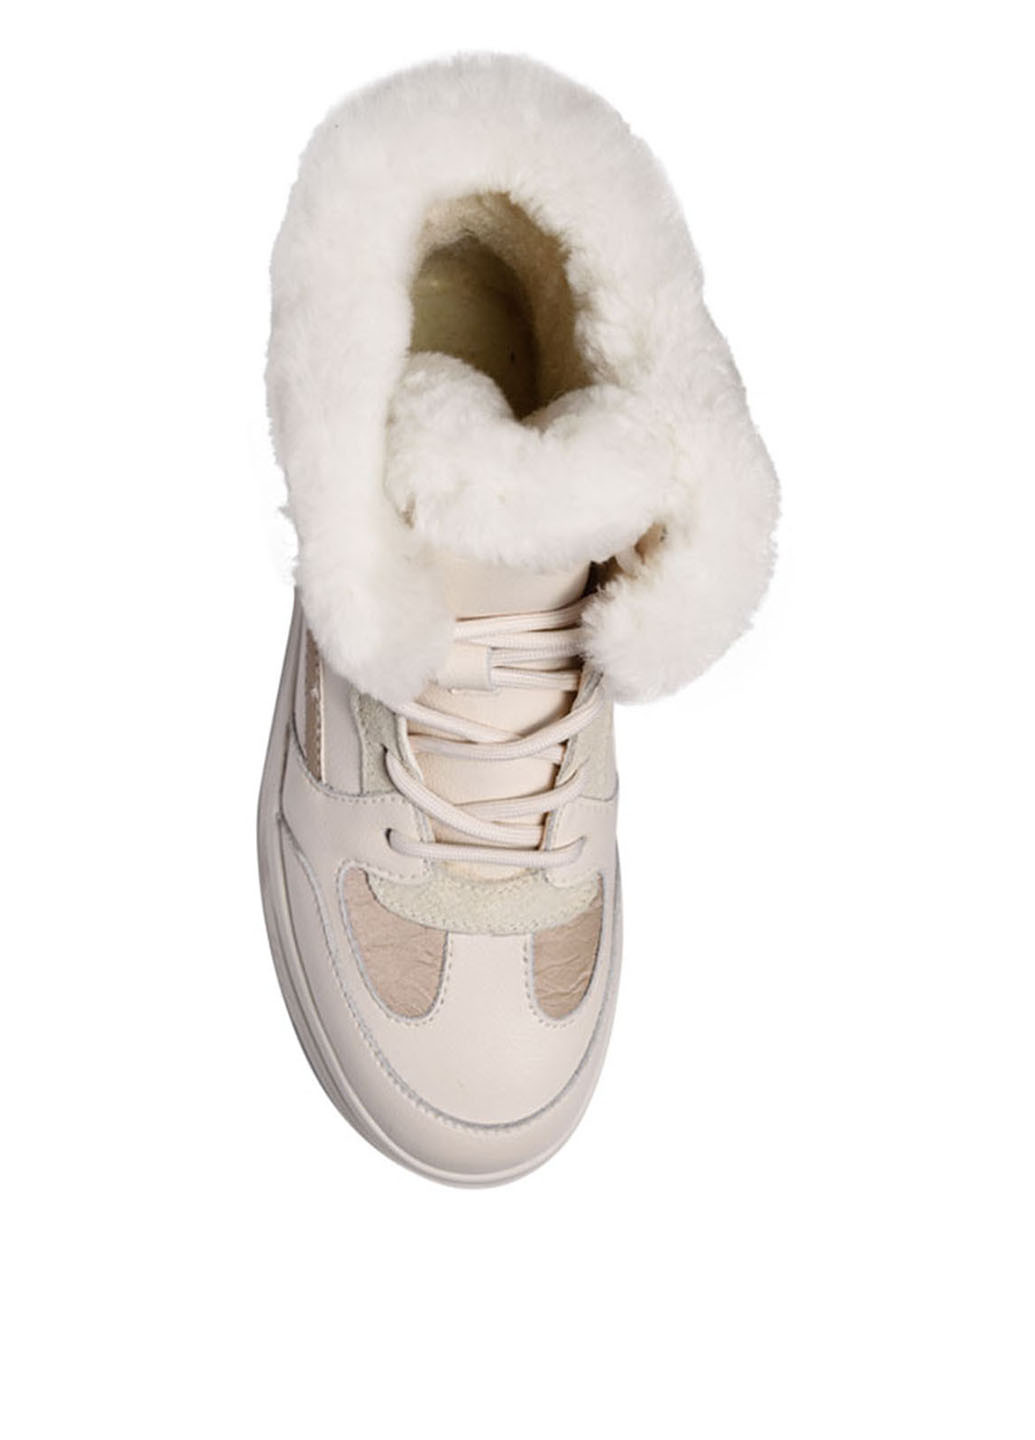 Зимние ботинки Verendina с белой подошвой